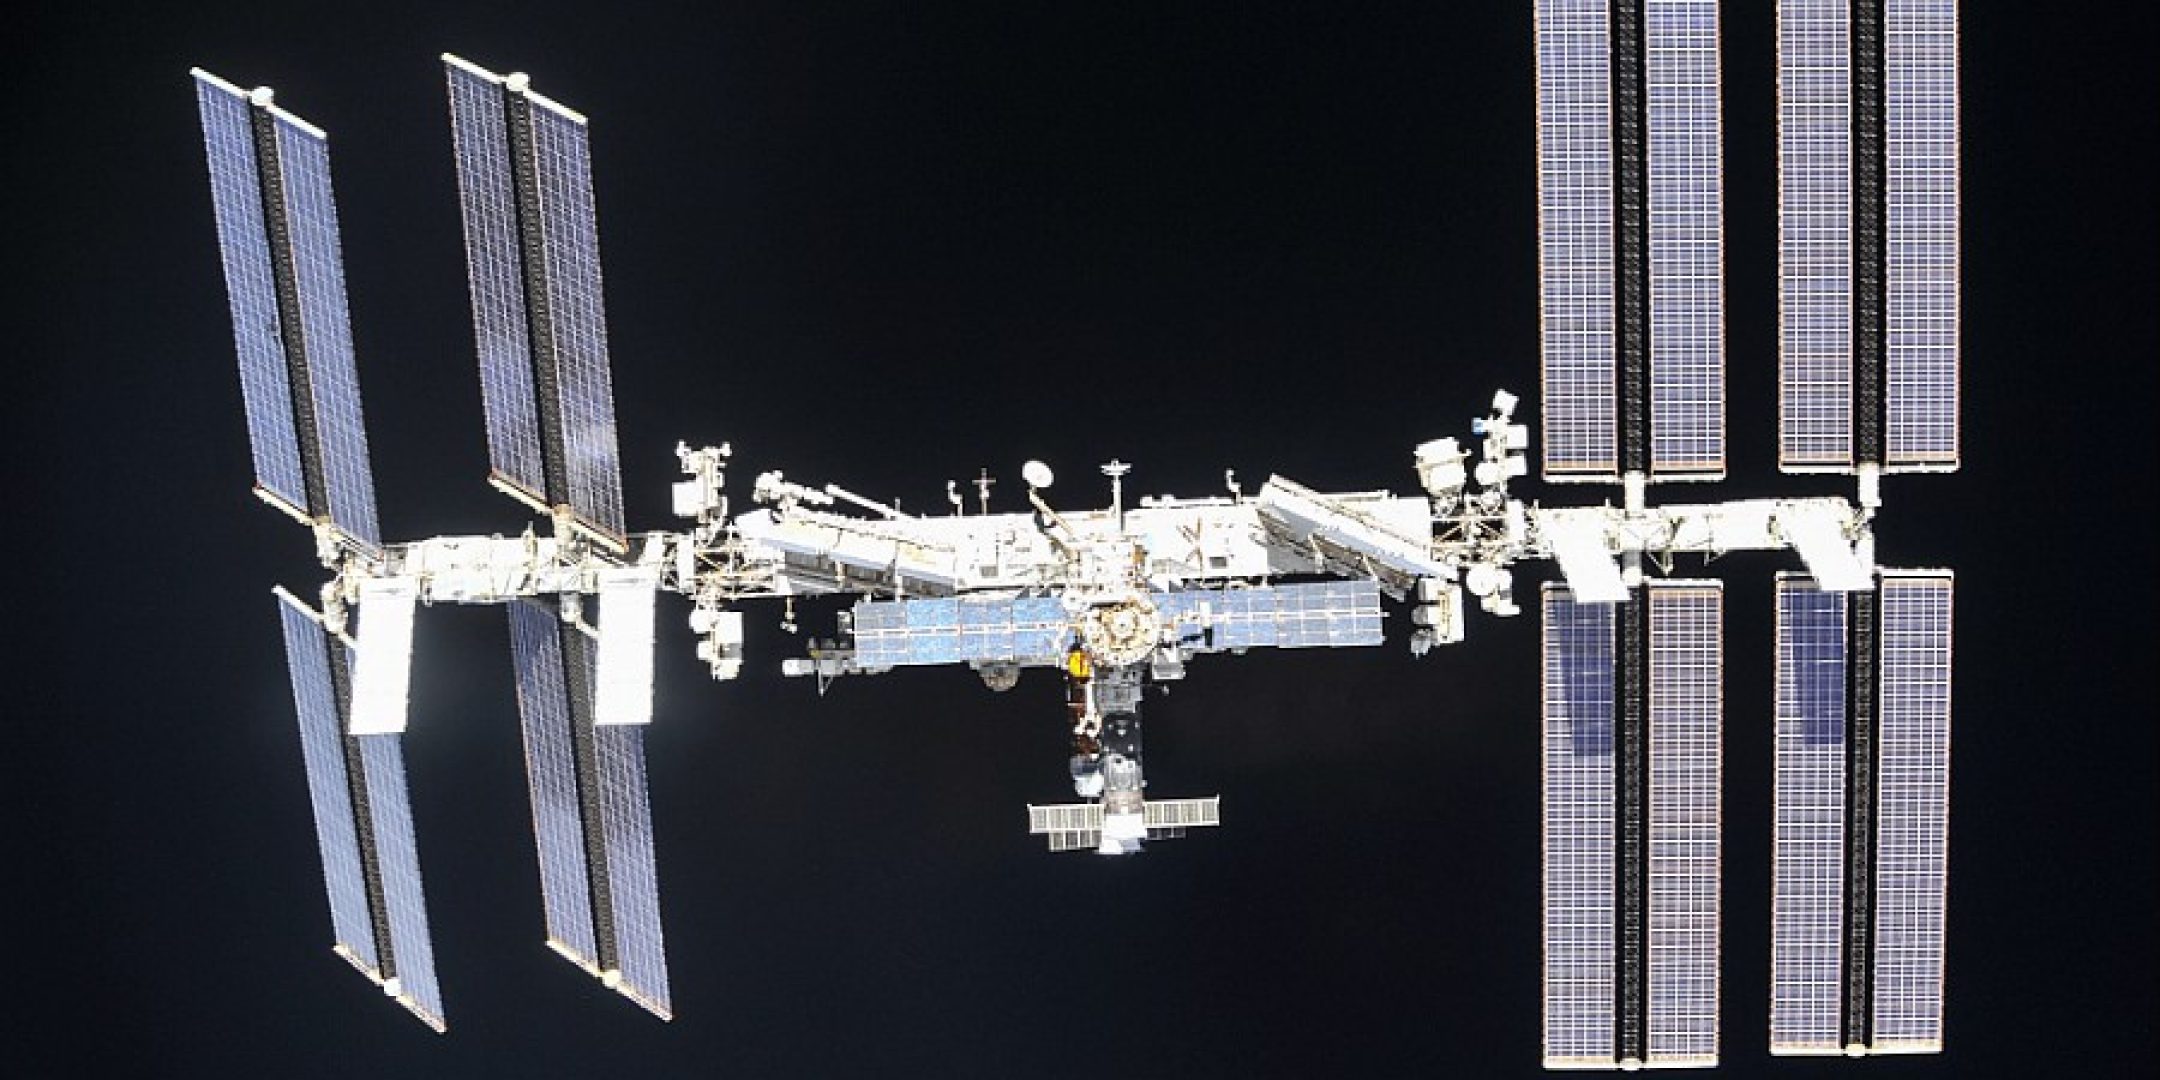 La Station Spatiale Internationale photographiee par les spationautes de l'expedition 56 a bord du vaisseau spatial Soyouz lors de son desamarrage.

La station spatiale internationale a fete son 20e anniversaire en novembre 2018.